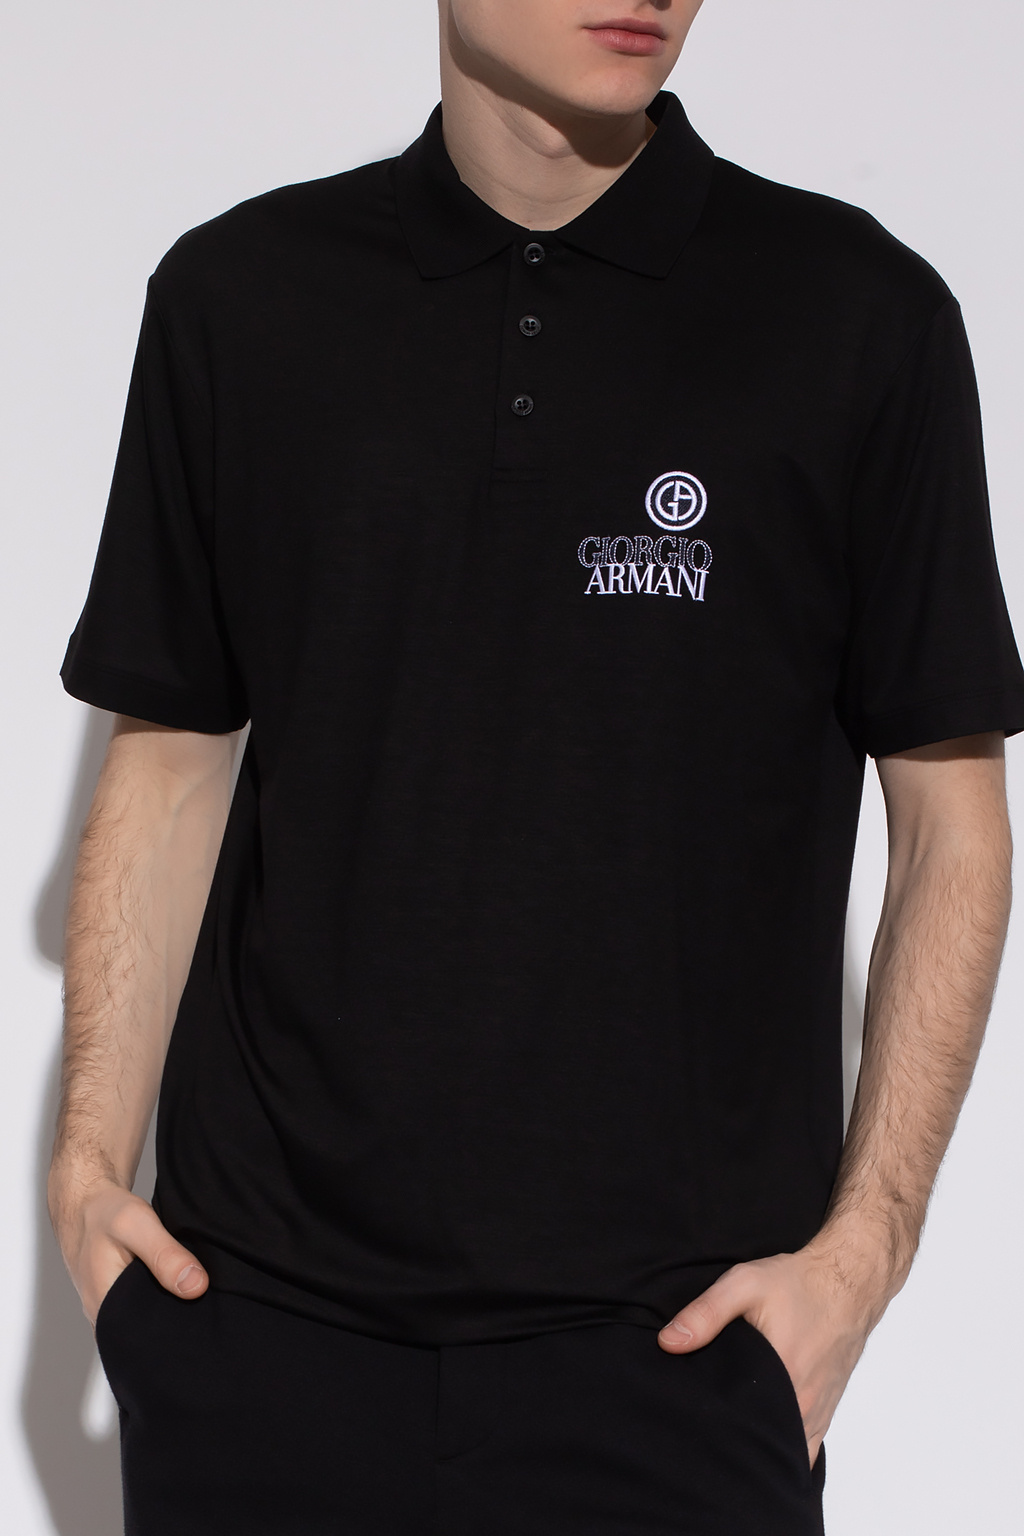 Giorgio Armani Blau polo shirt with logo